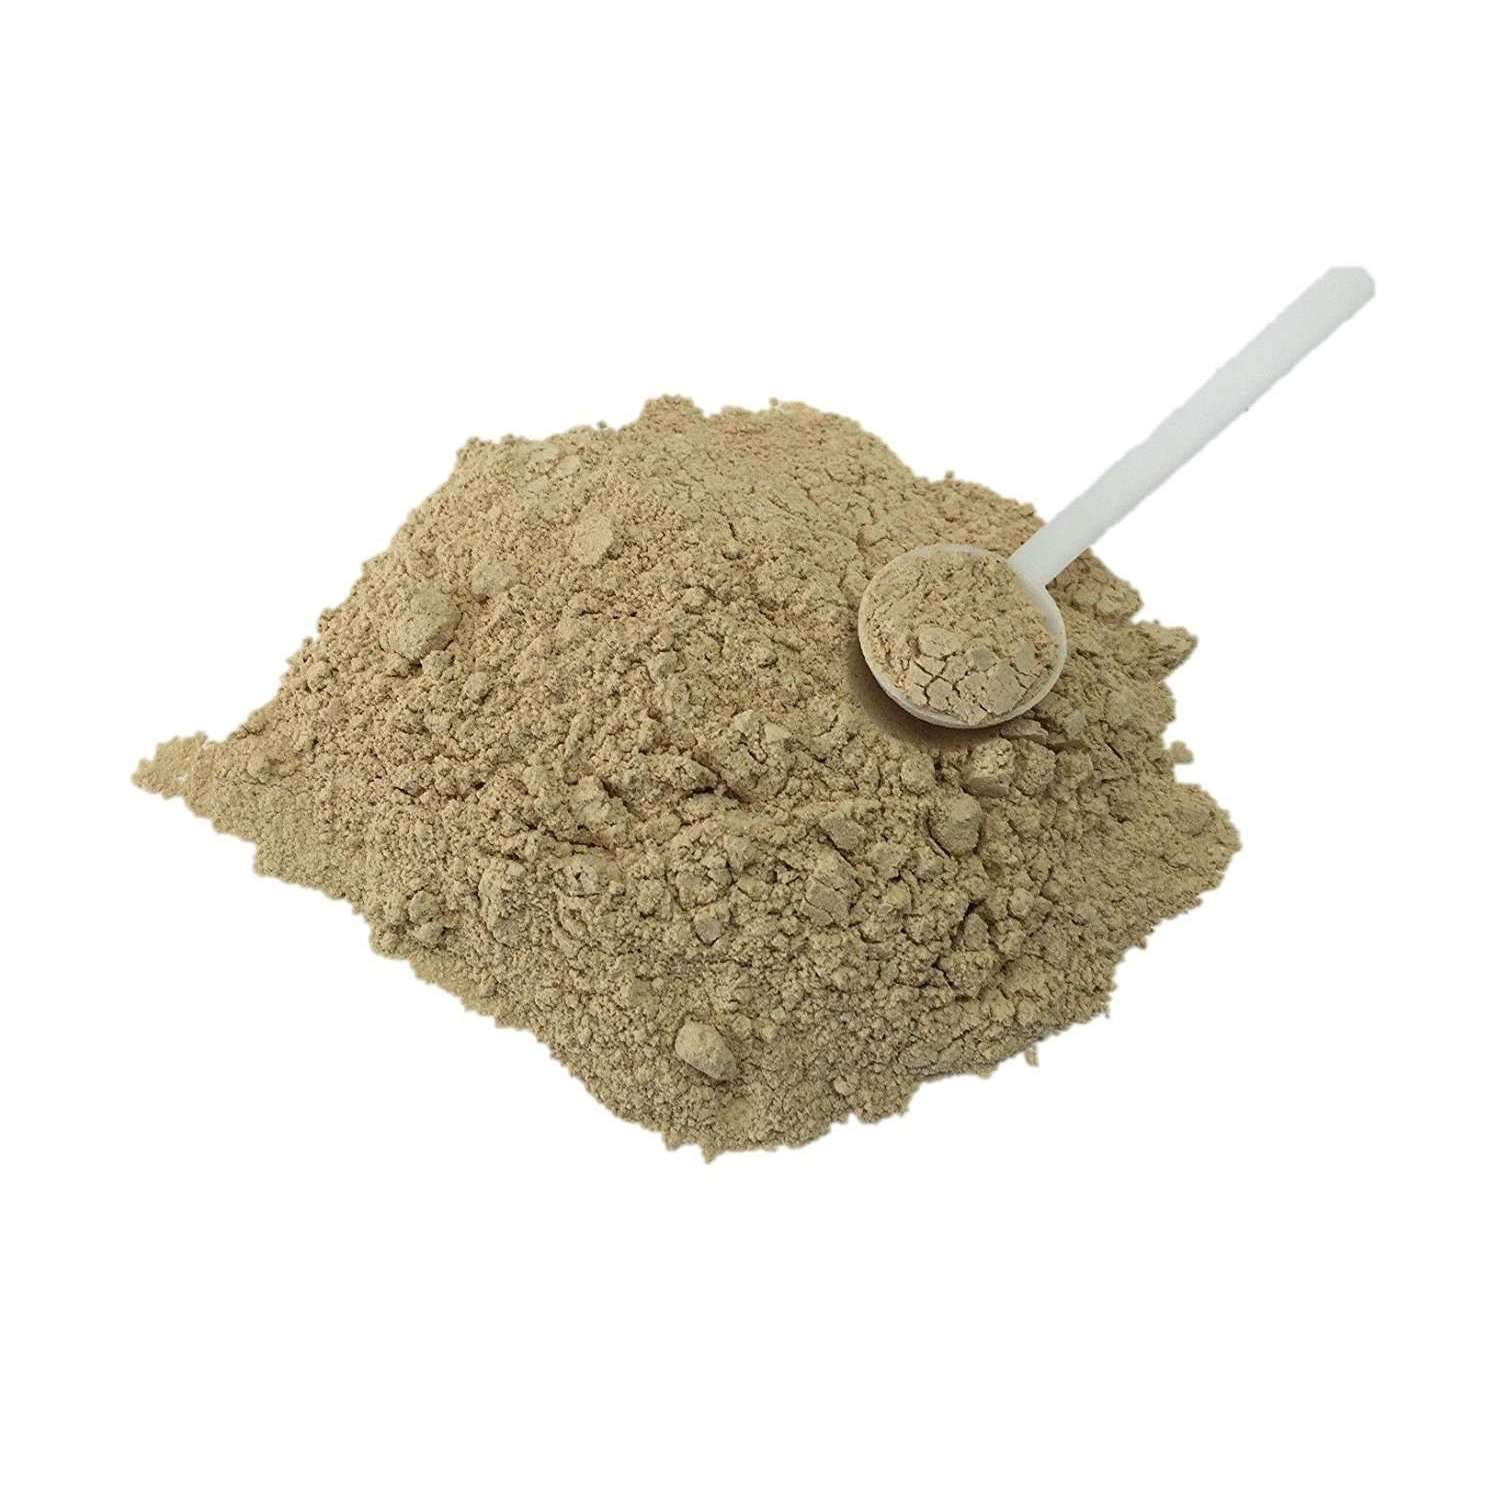 Panax Notoginseng Tienchi (San Qi) Root Herbs (4oz. - 8oz. Powder) - Buy at New Green Nutrition